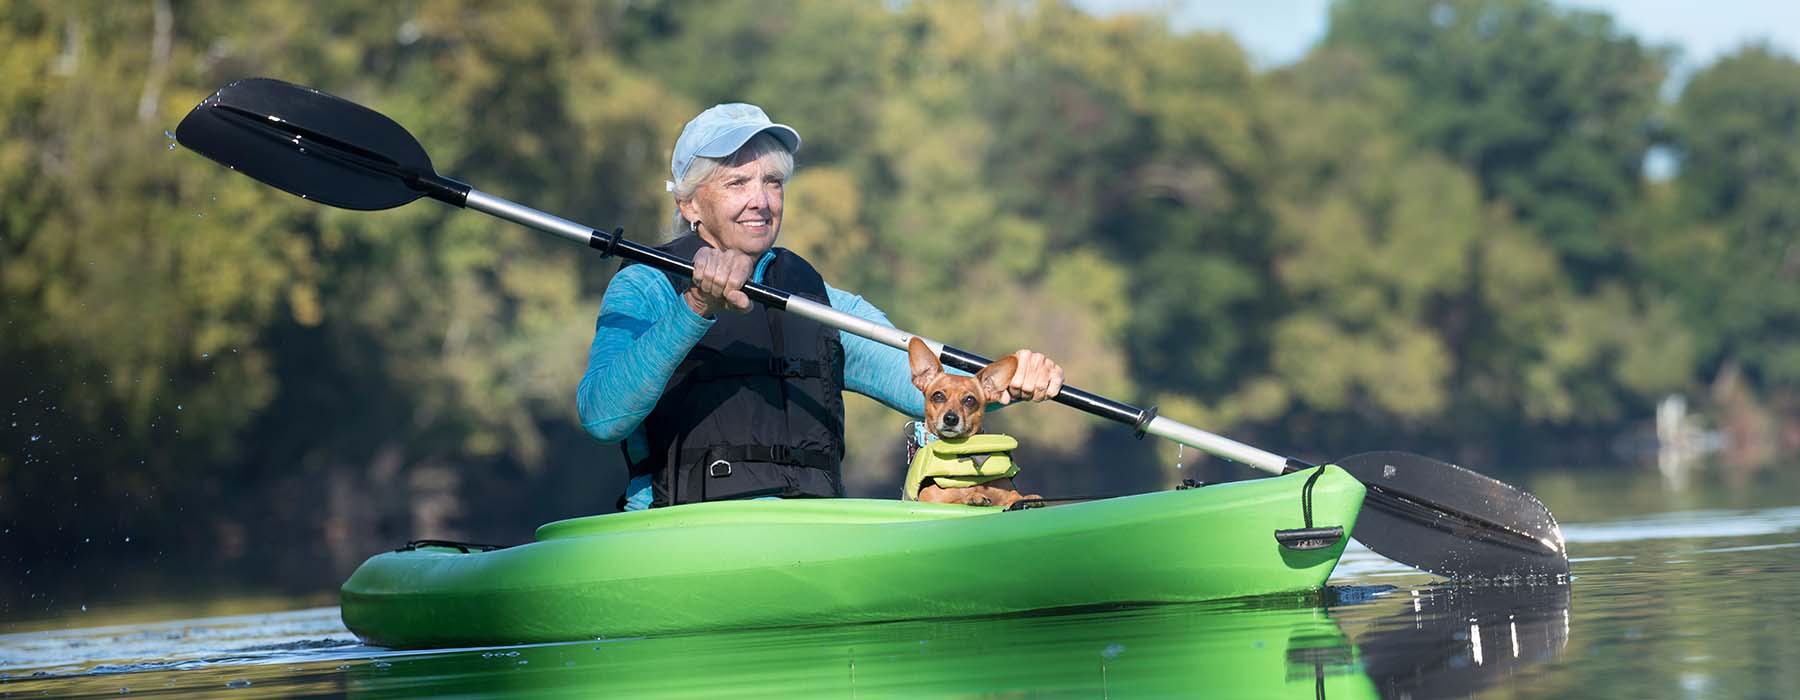 Senior Woman Kayaking with her Dog